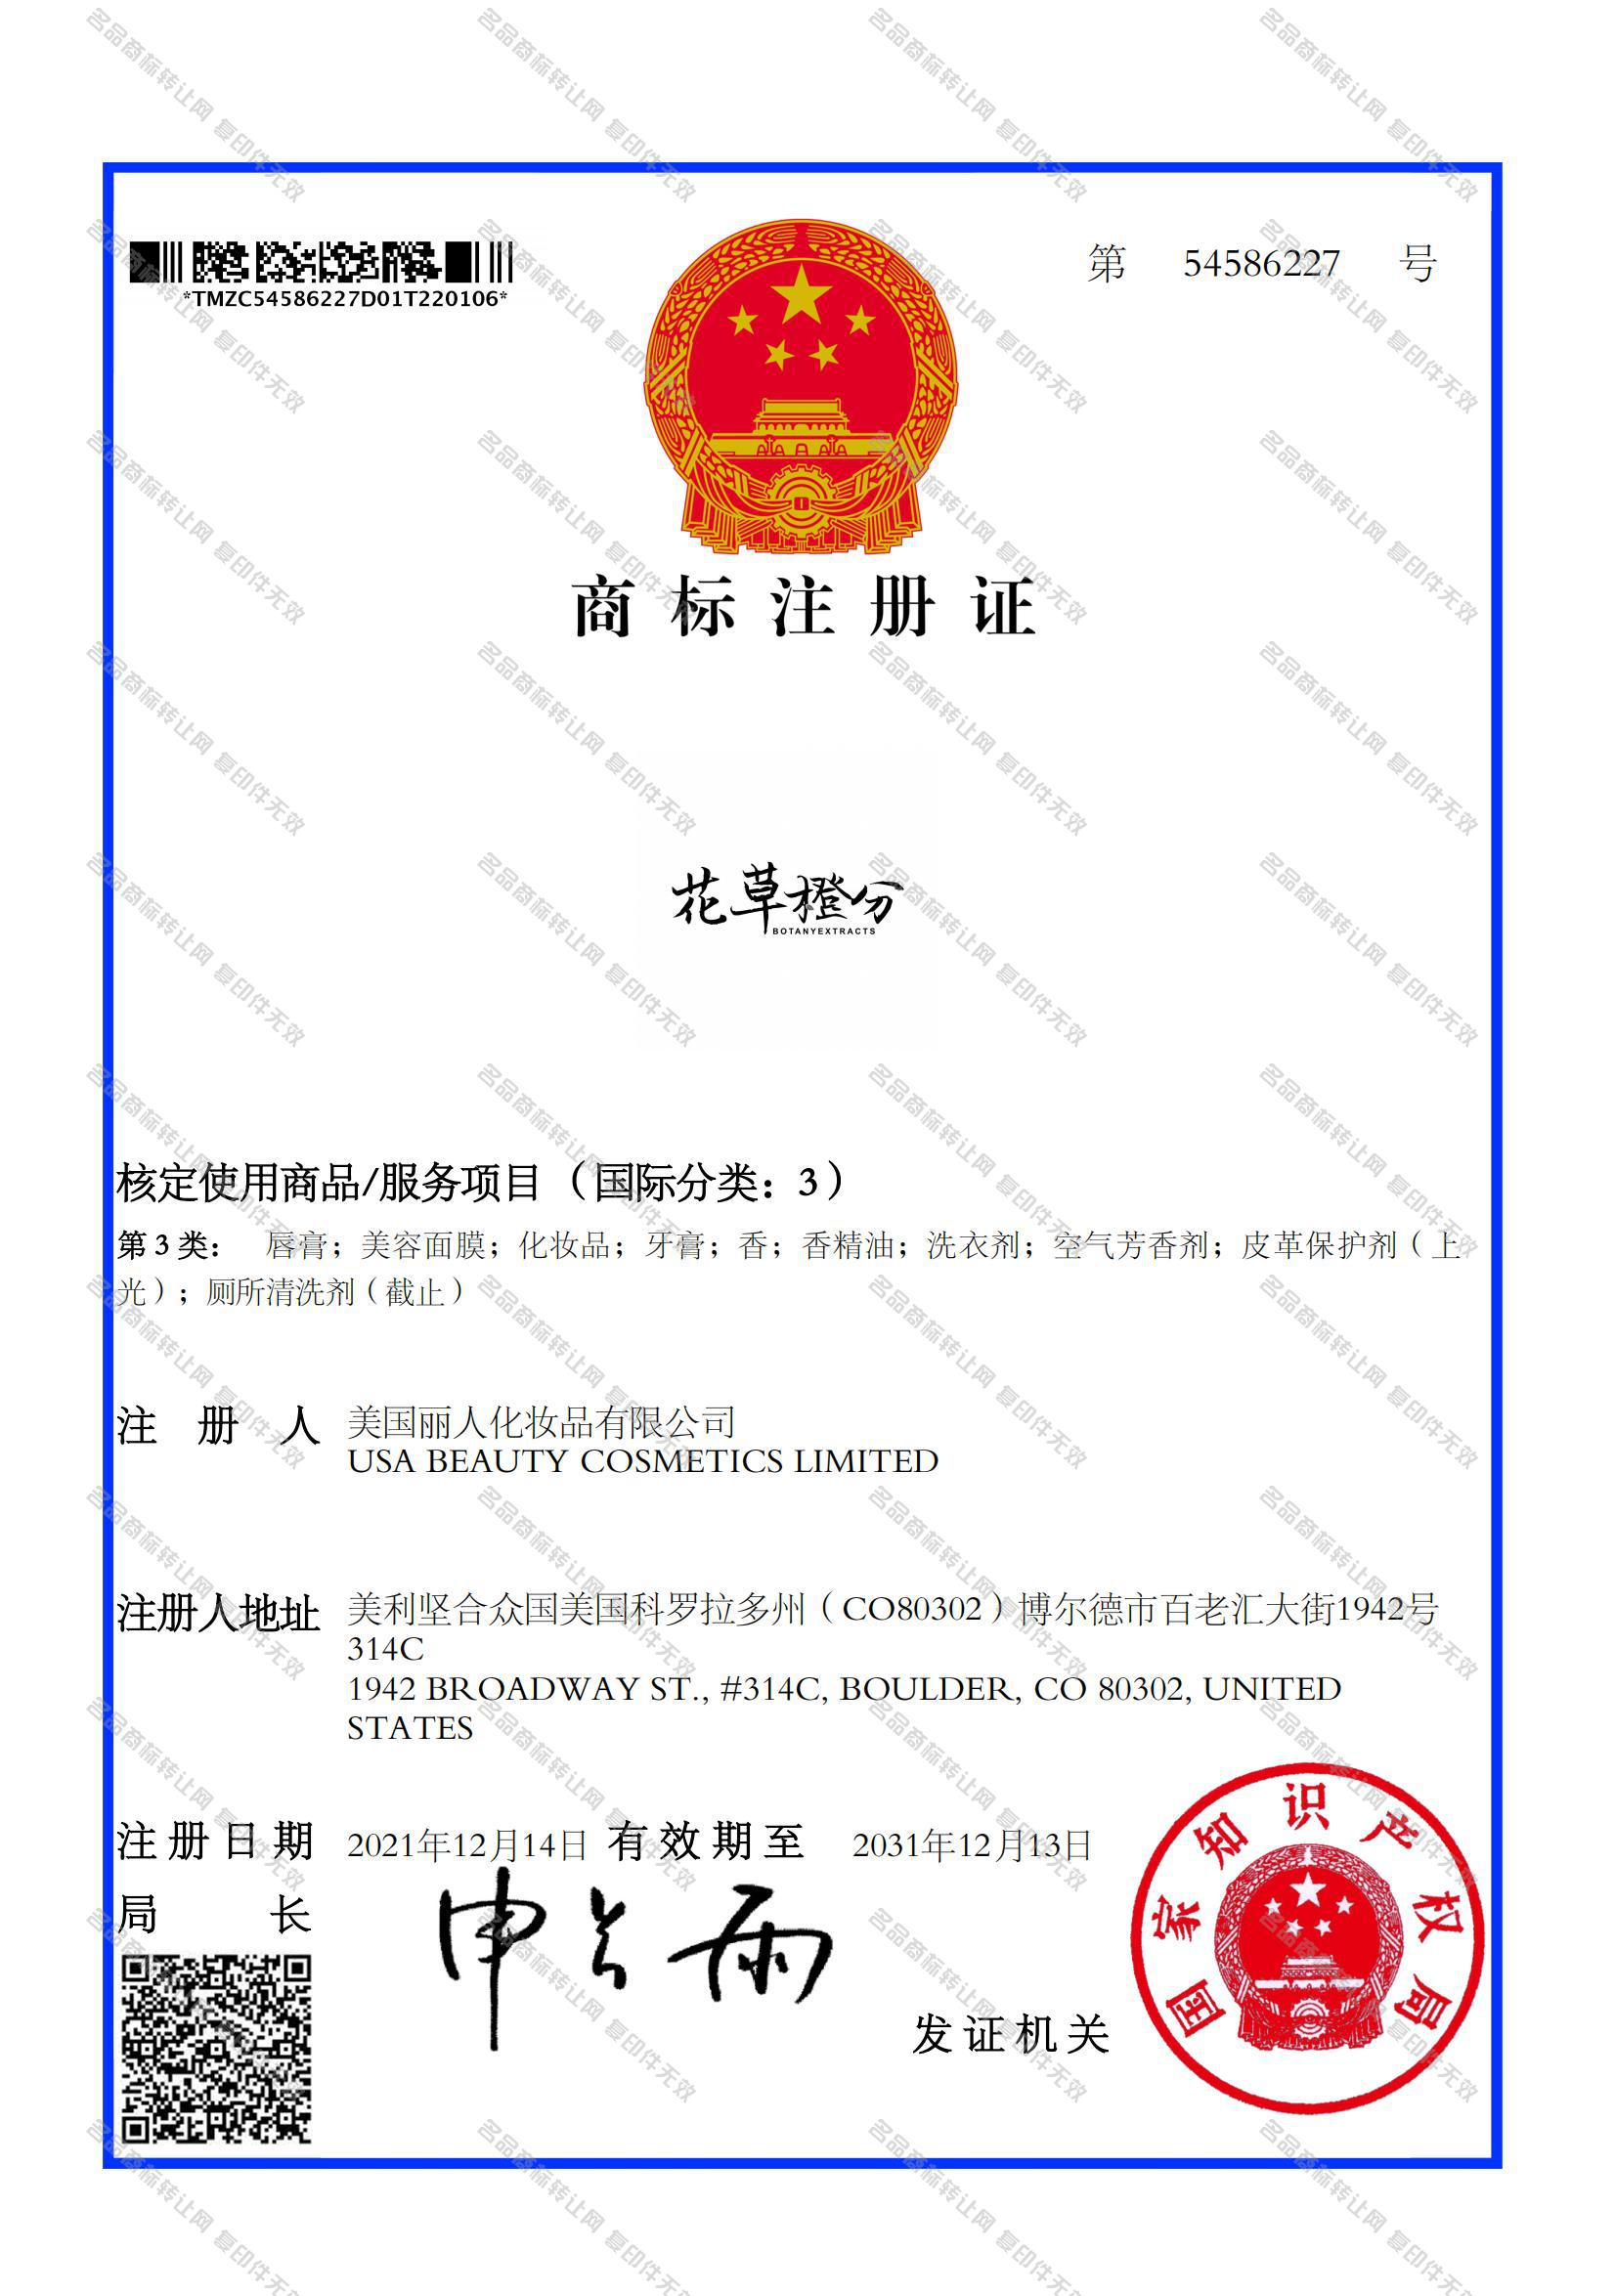 花草橙分 BOTANY EXTRACTS注册证